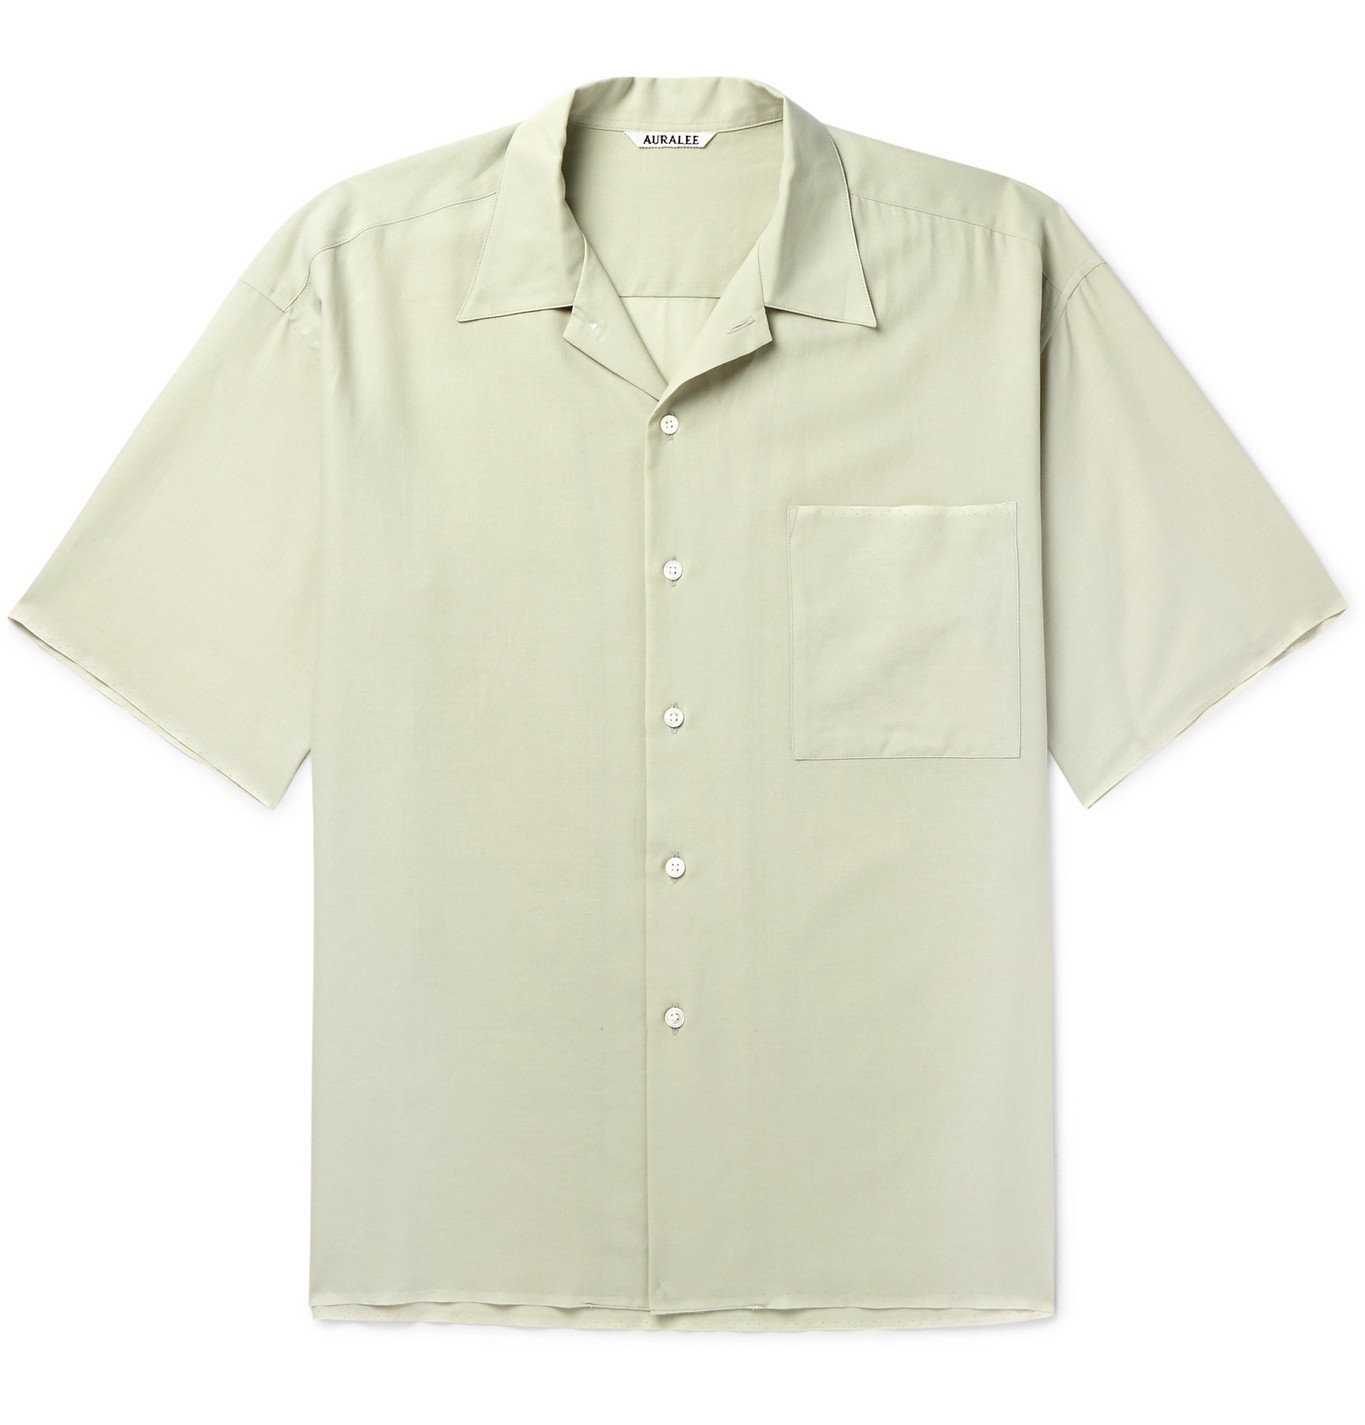 Auralee - Camp-Collar Cotton-Georgette Shirt - Green Auralee